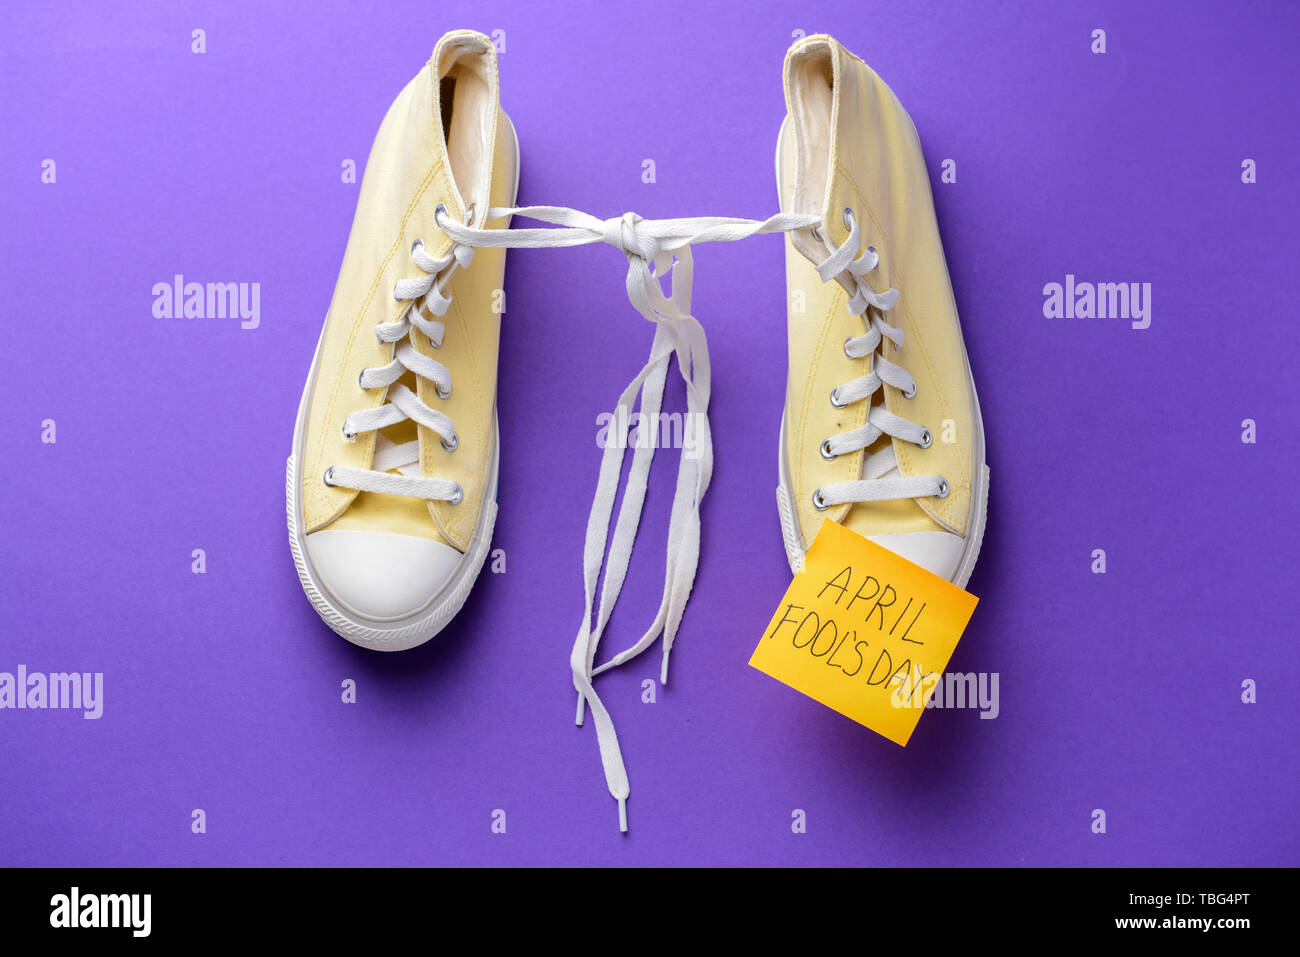 Chaussures à lacets attachés ensemble et sticky note avec texte Poisson d' avril sur un fond de couleur Photo Stock - Alamy